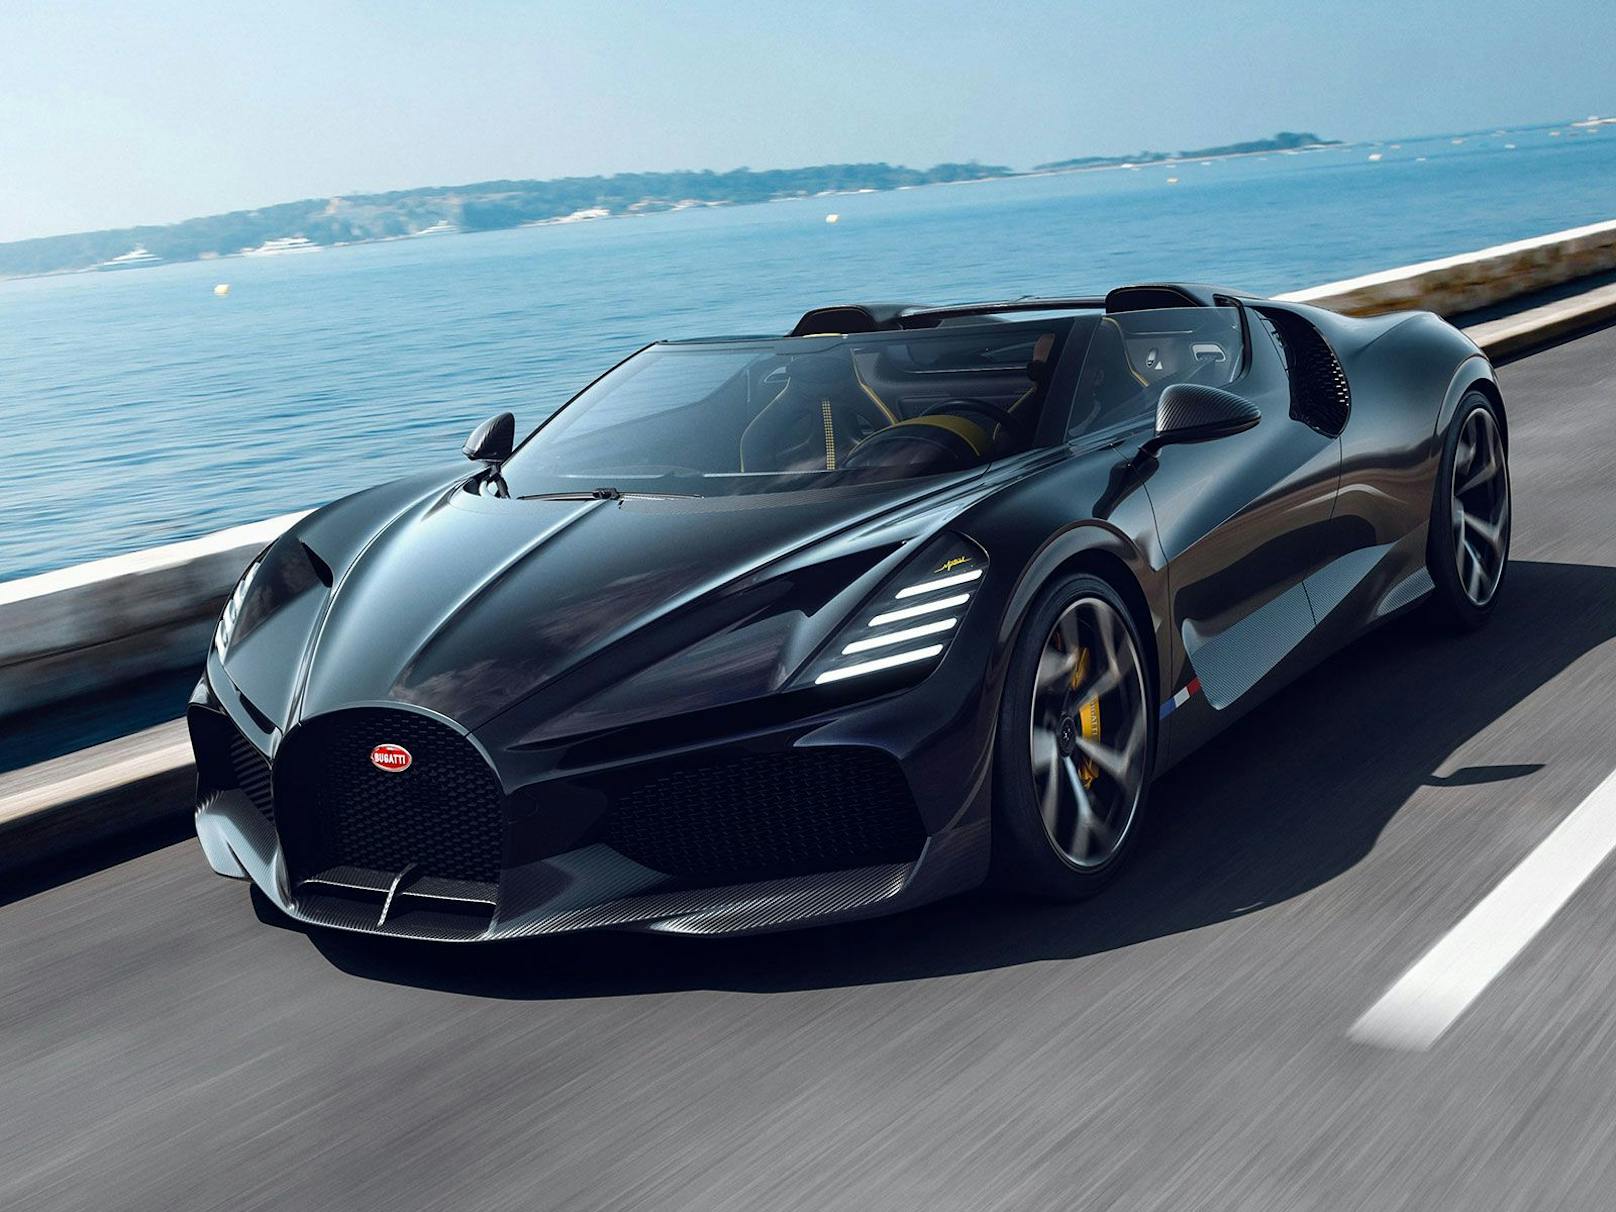 Bugatti präsentiert Roadster mit 1.600 PS Leistung